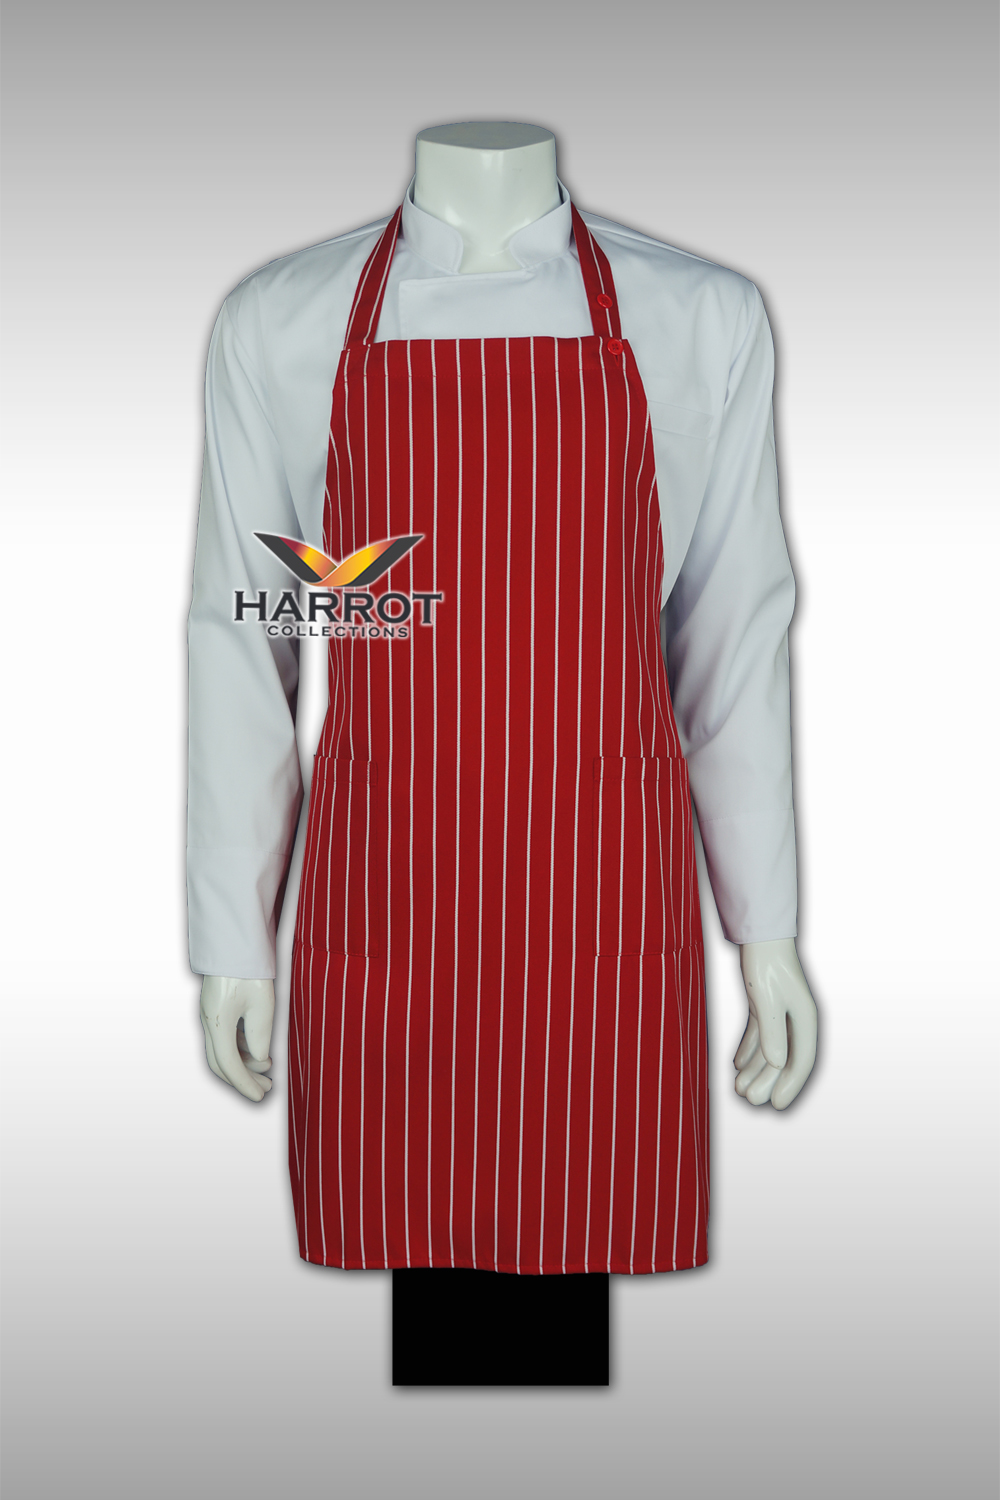 ผ้ากันเปื้อน ผ้ากันเปื้อนเชฟ ผ้ากันเปื้อนพ่อครัว ผ้ากันเปื้อนกุ๊ก ผ้ากันเปื้อนเสิร์ฟ เต็มตัว ลายลาครัวแดง (FSA0707)